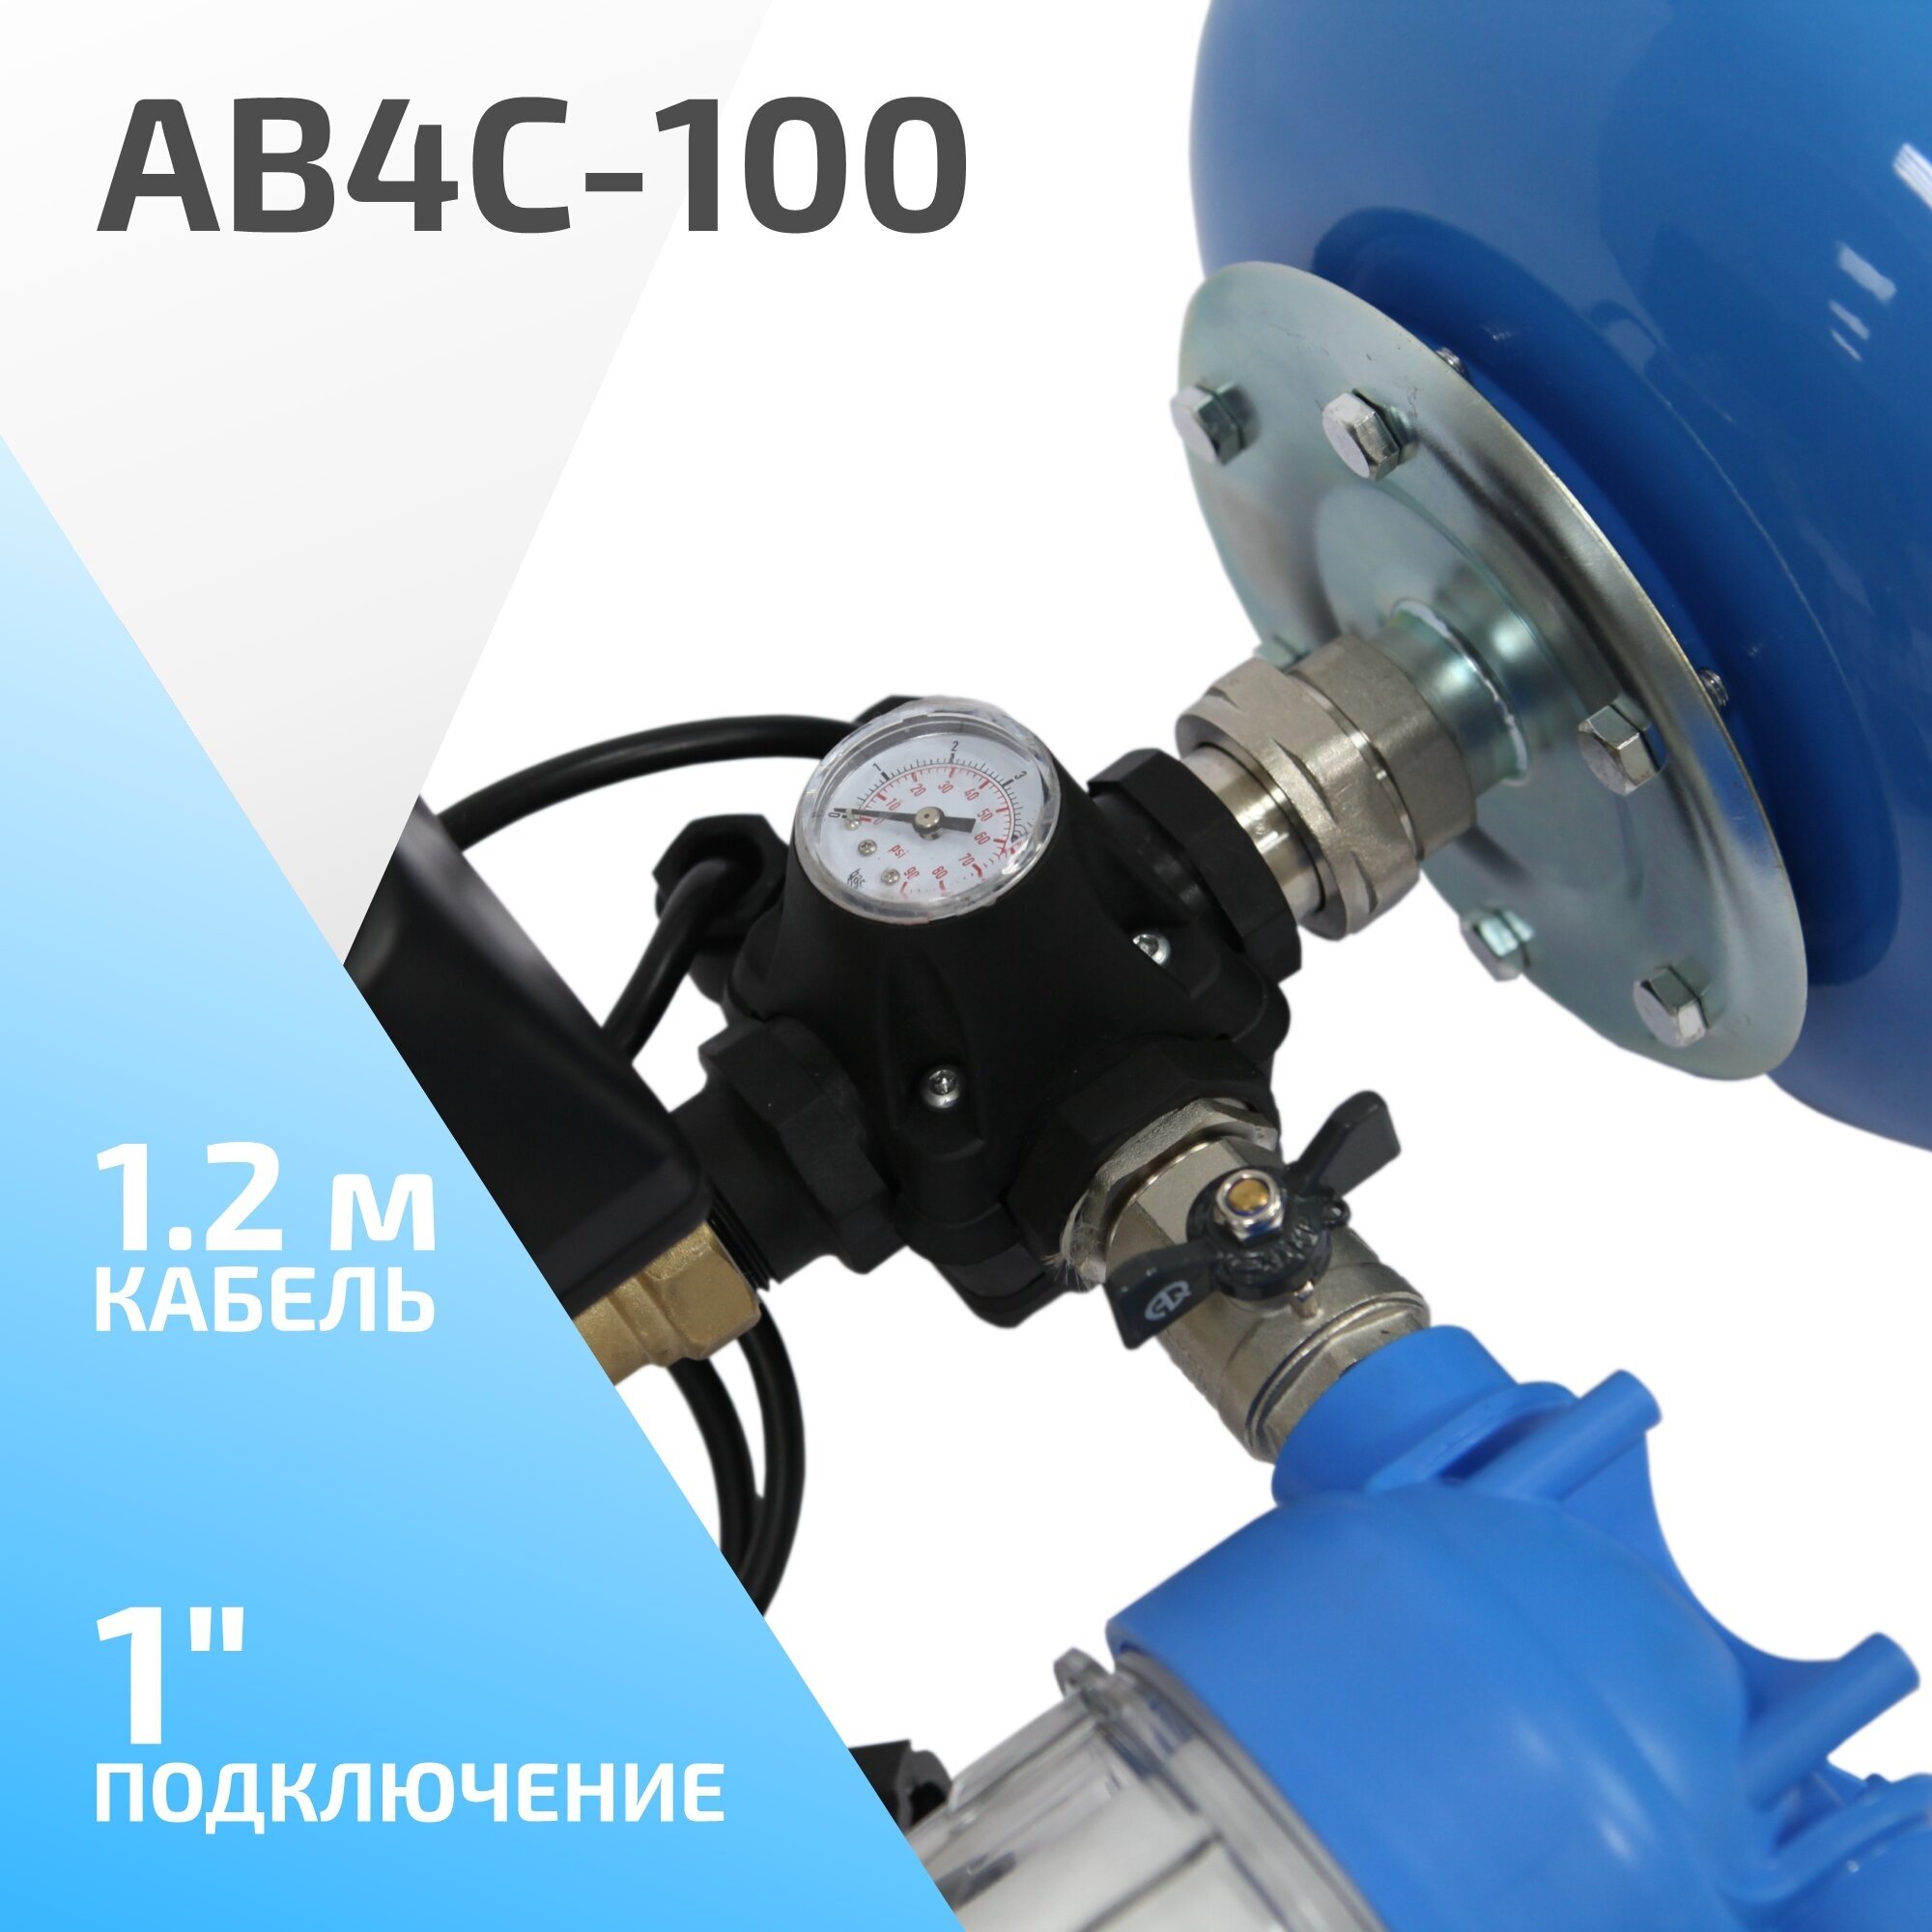 Гидроаккумулятор с блоком автоматики ETERNA Engineering АВ4С-100 100 л вертикальная установка - фотография № 2